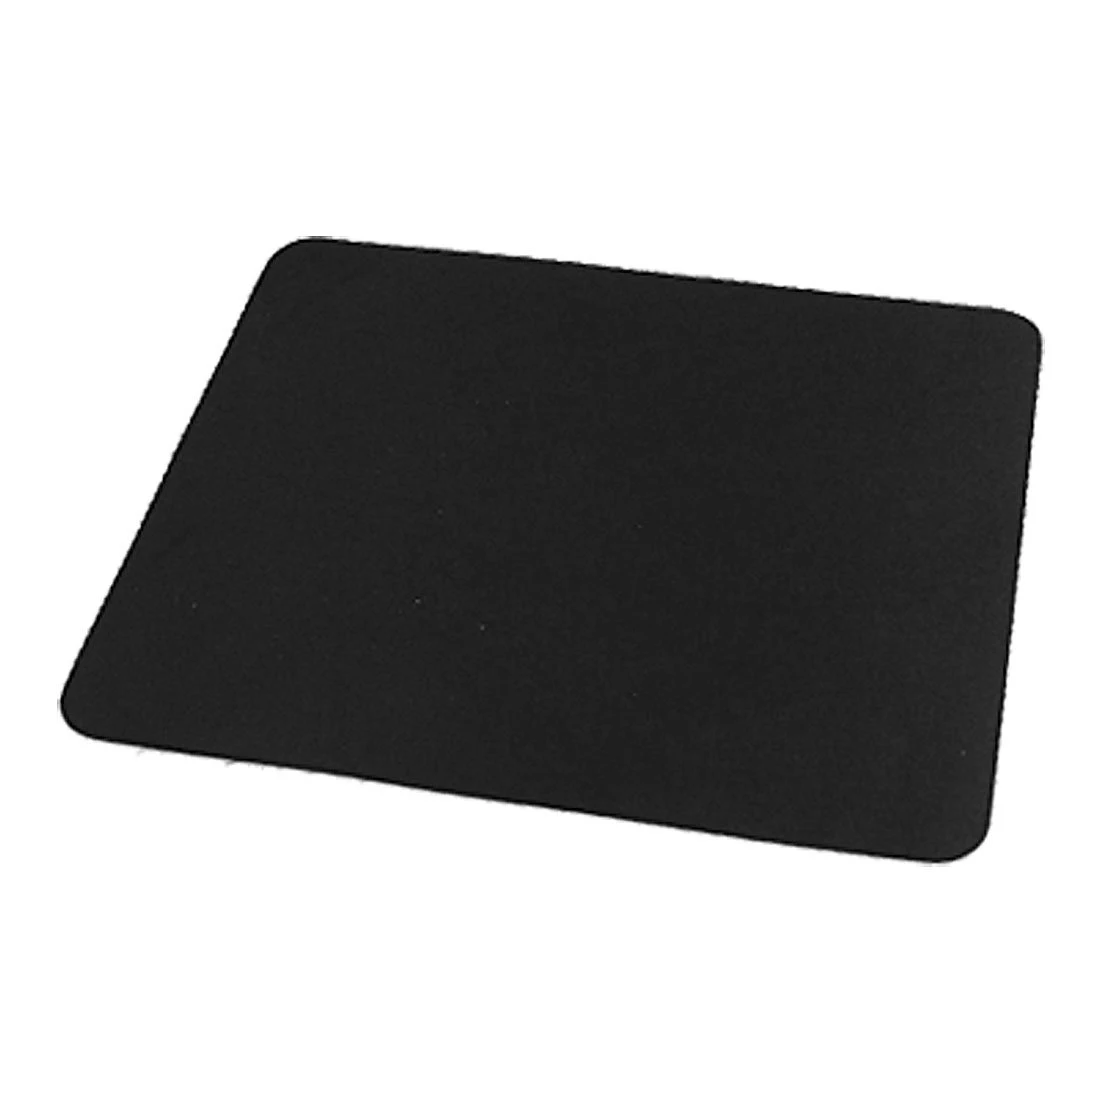 CAA горячий черный оптический коврик для мыши для ноутбука ПК